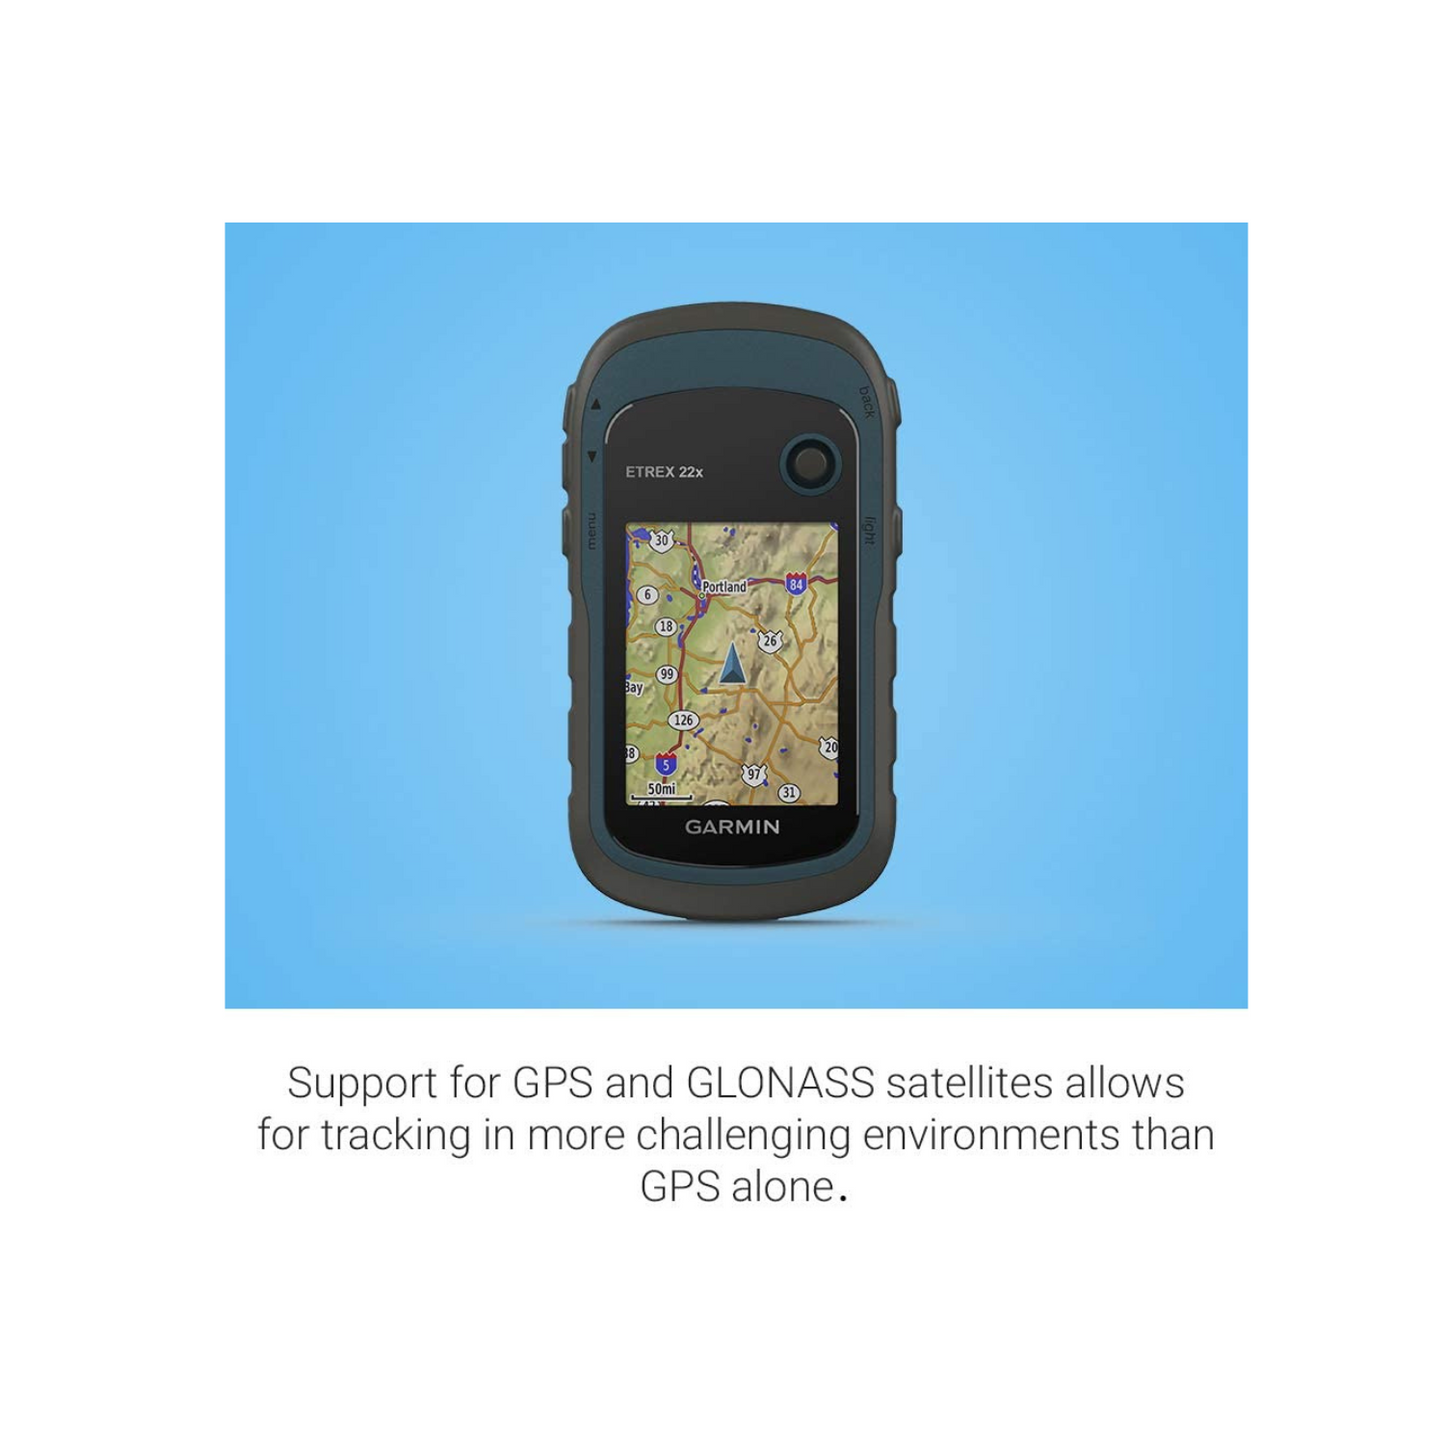 Garmin Etrex 22x, Rugged Handheld GPS Navigator